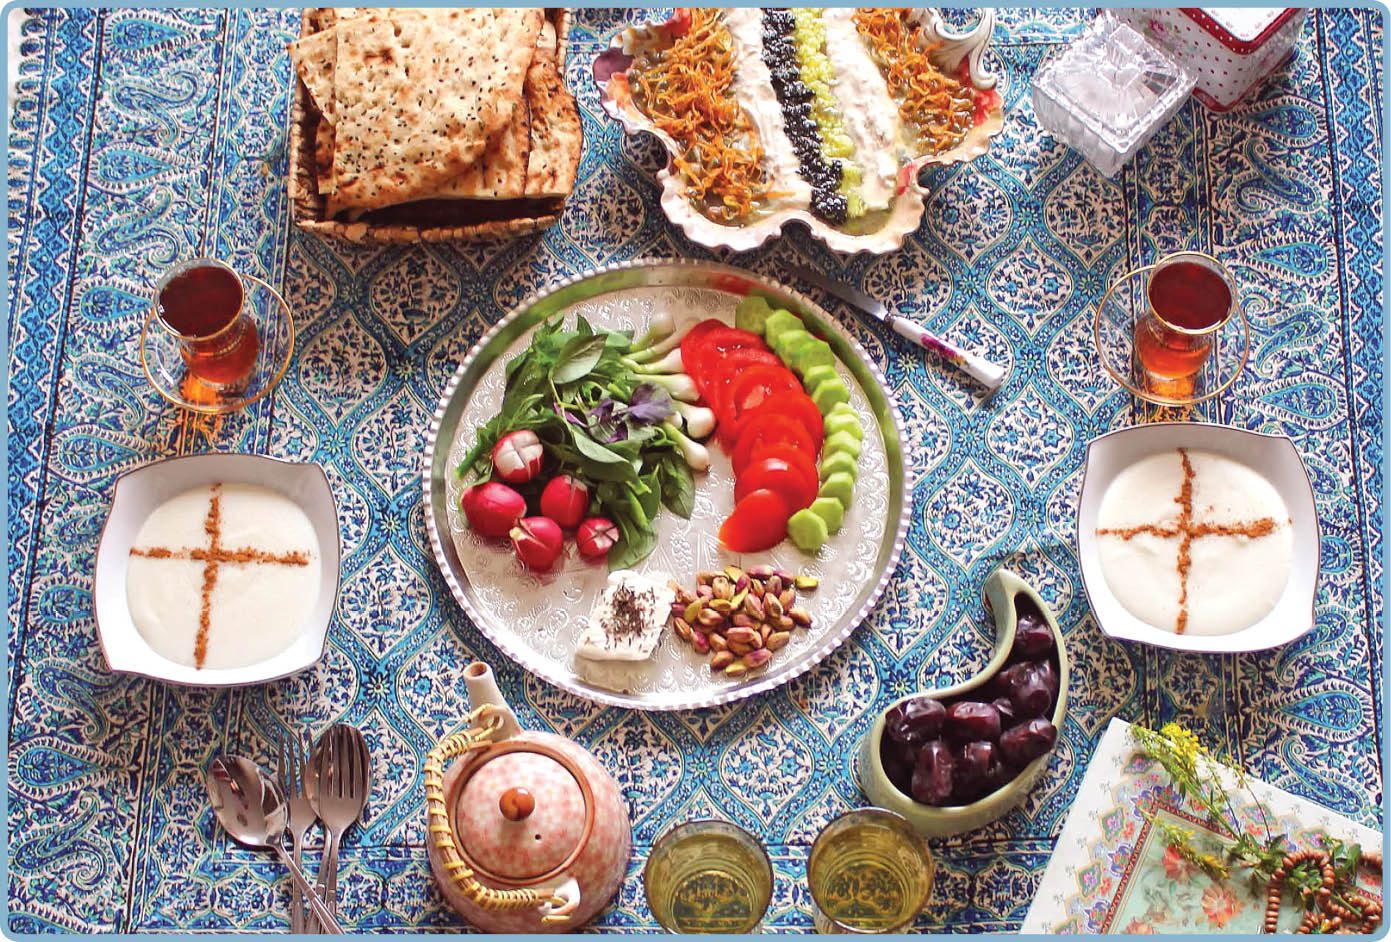 باید ها و نباید های تغذیه ای در ماه رمضان تغذیه سالم